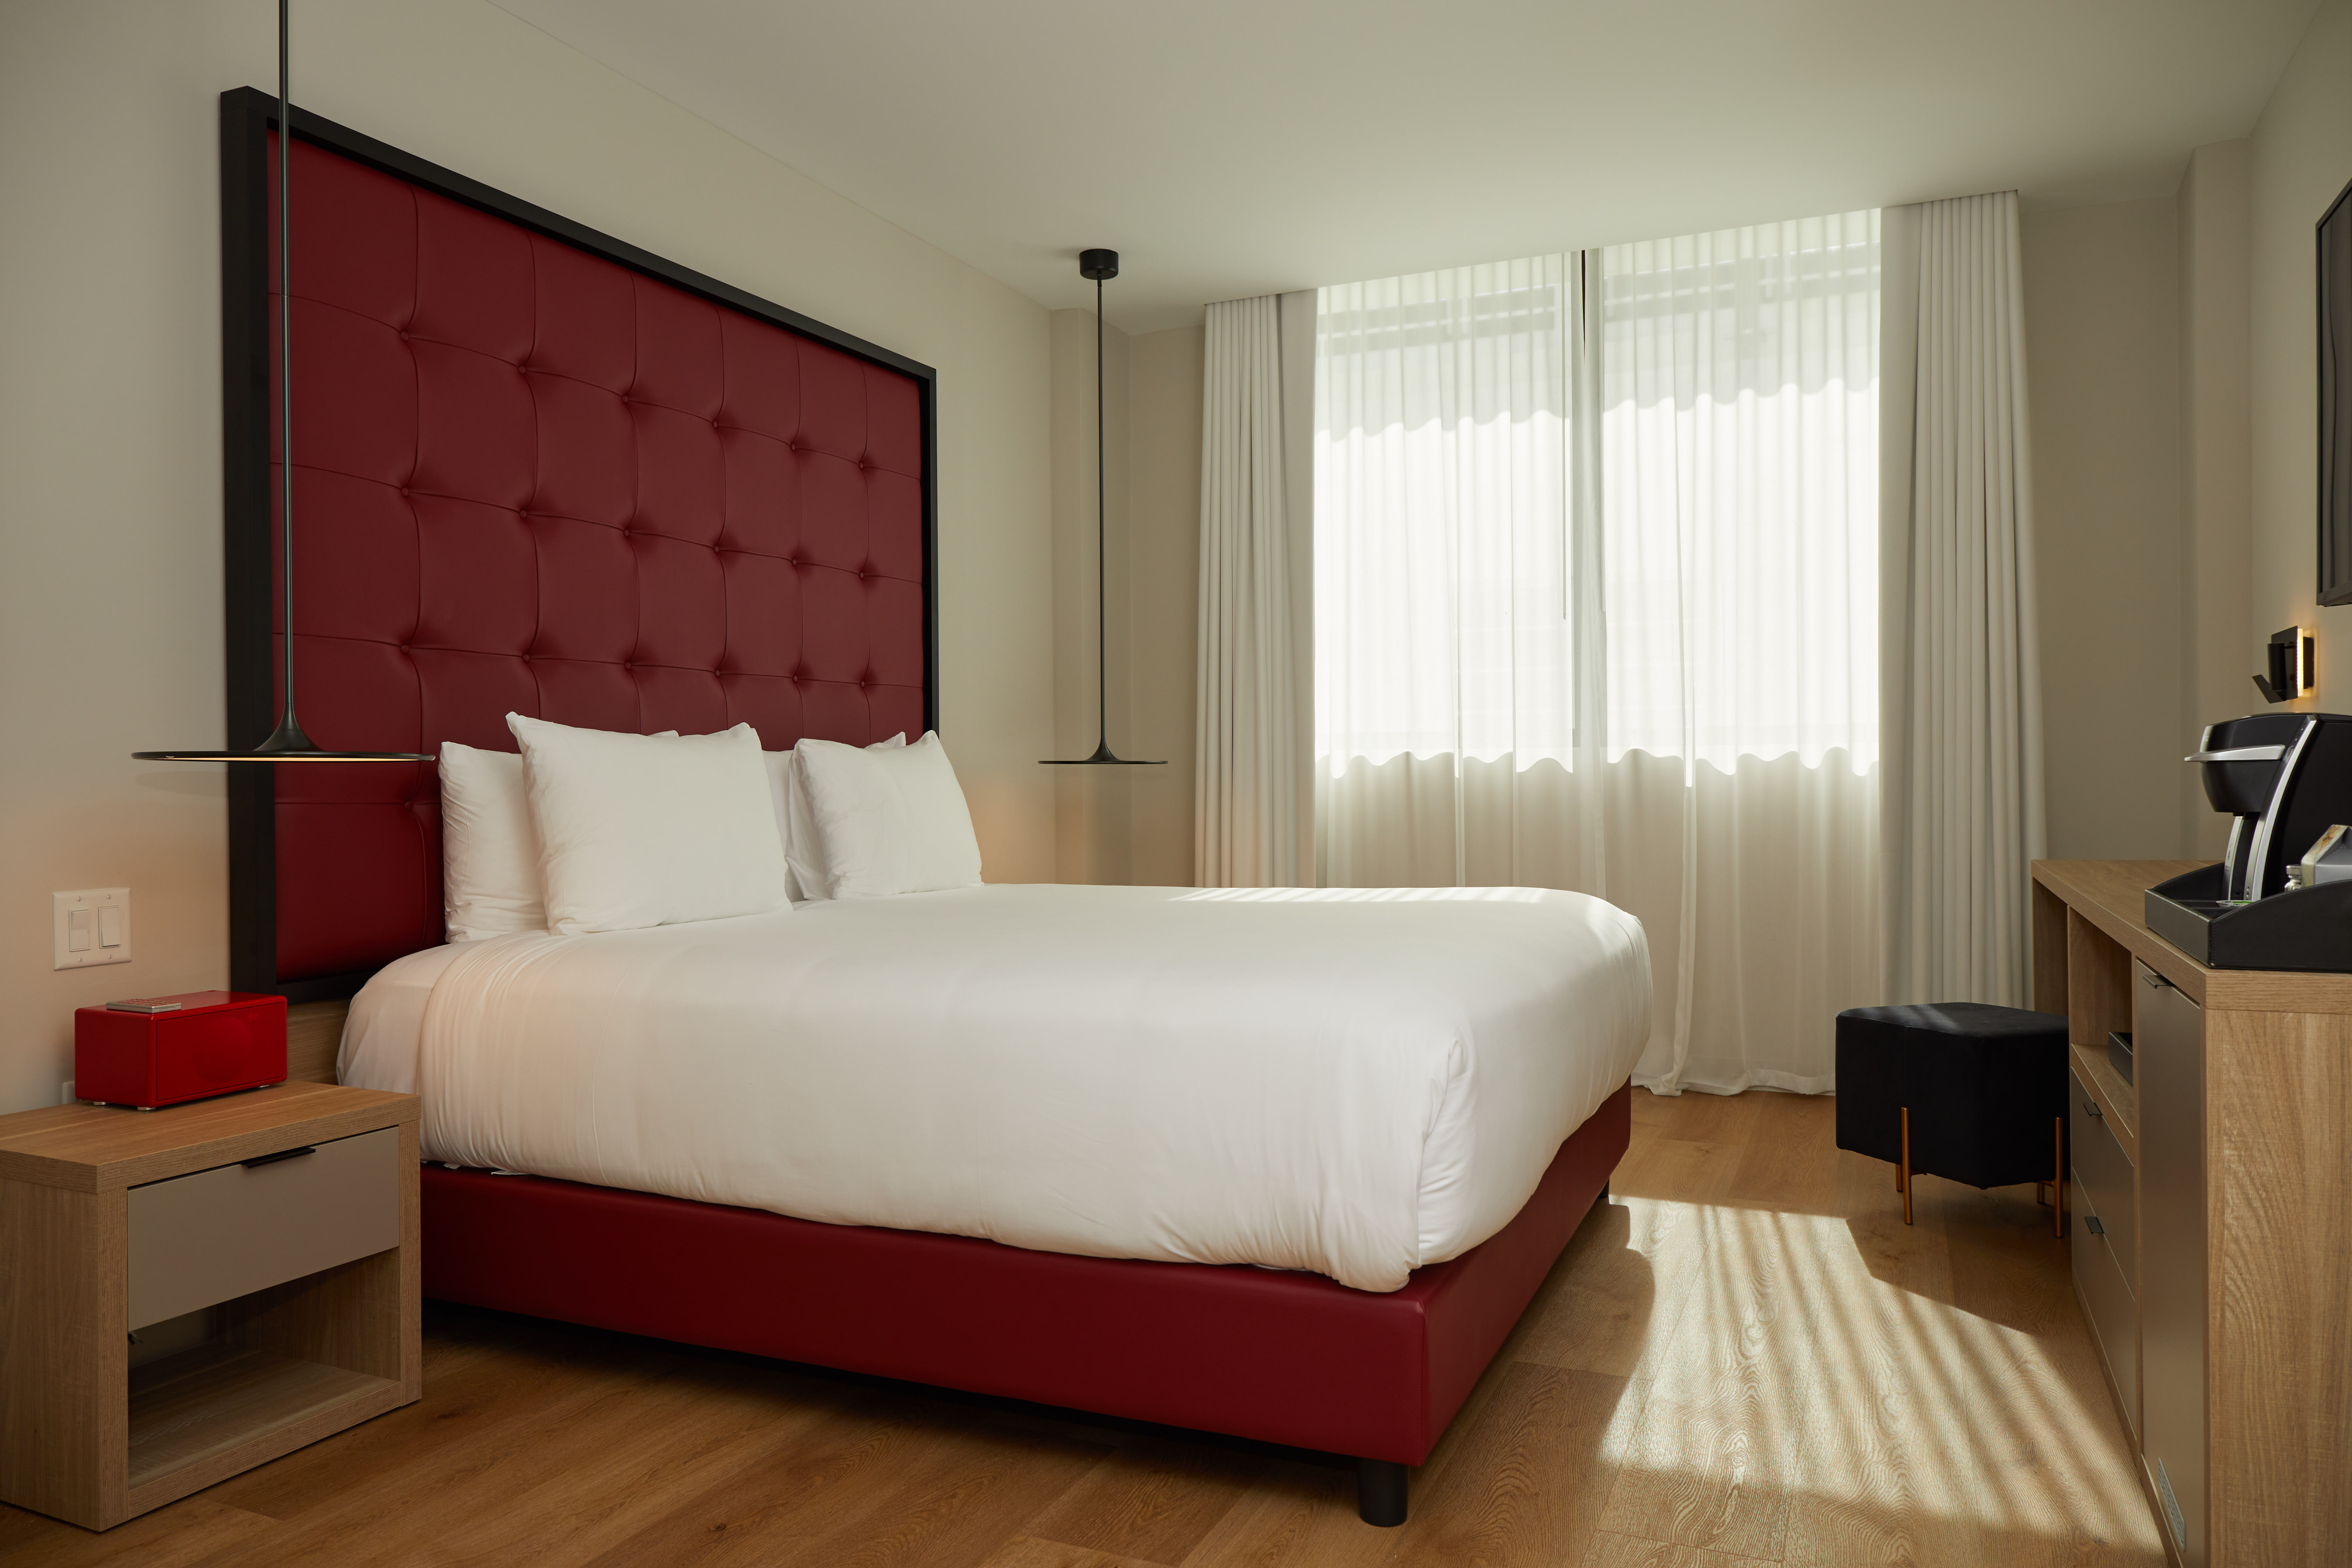 Imagen de una habitación con cama doble